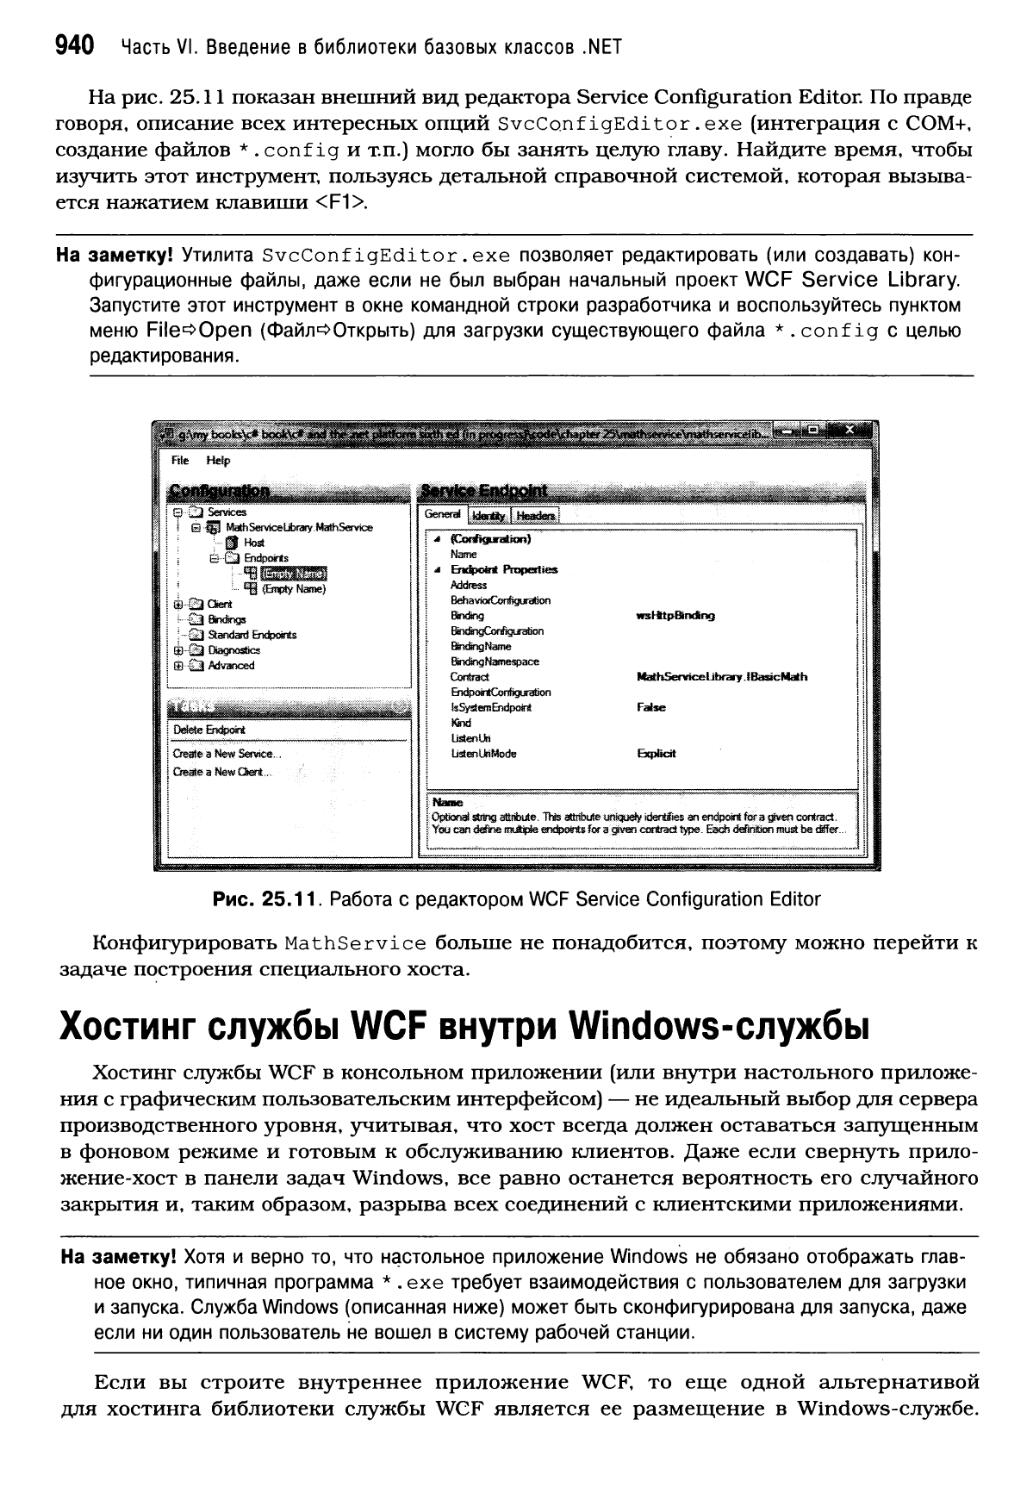 Хостинг службы WCF внутри Windows-службы